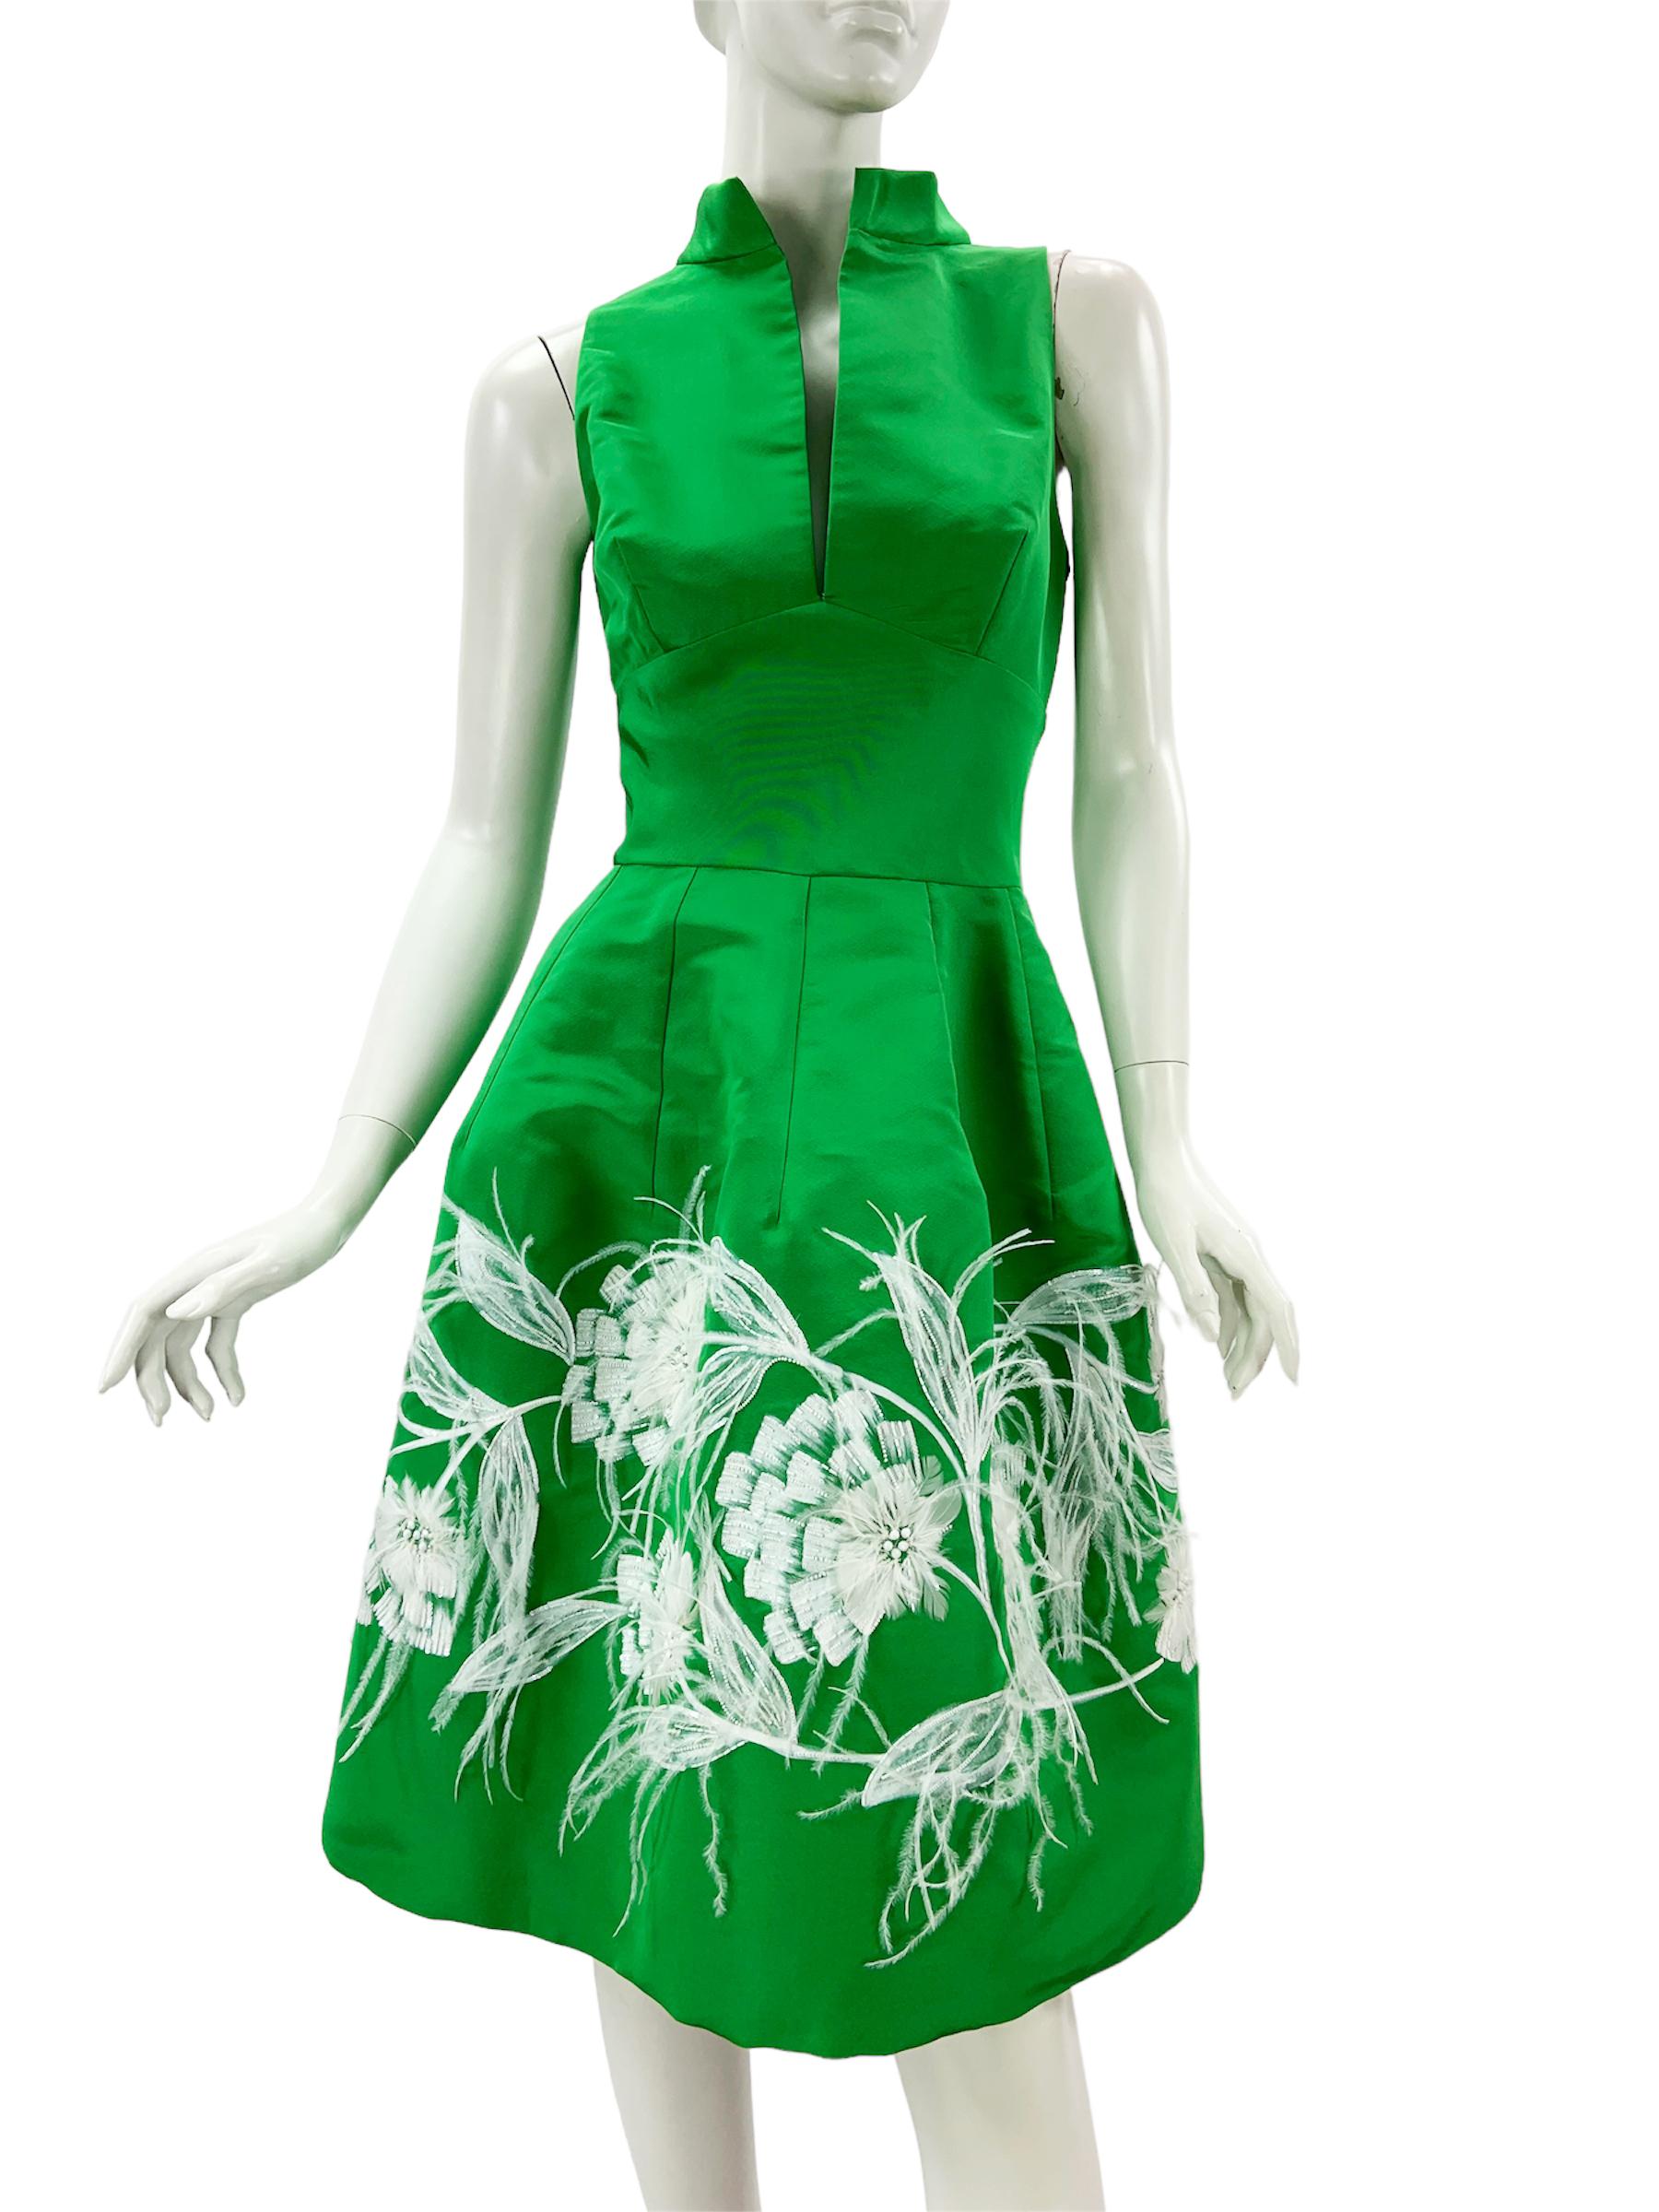 New Oscar de la Renta Green Silk Taffeta Embellished Cocktail Dress
Collection S/S 2015
Taille US - 6 (vérifier les mesures)
100 % taffetas de soie, plumes d'autruche, perles et paillettes, peint à la main.
Encolure plongeante, entièrement doublée,